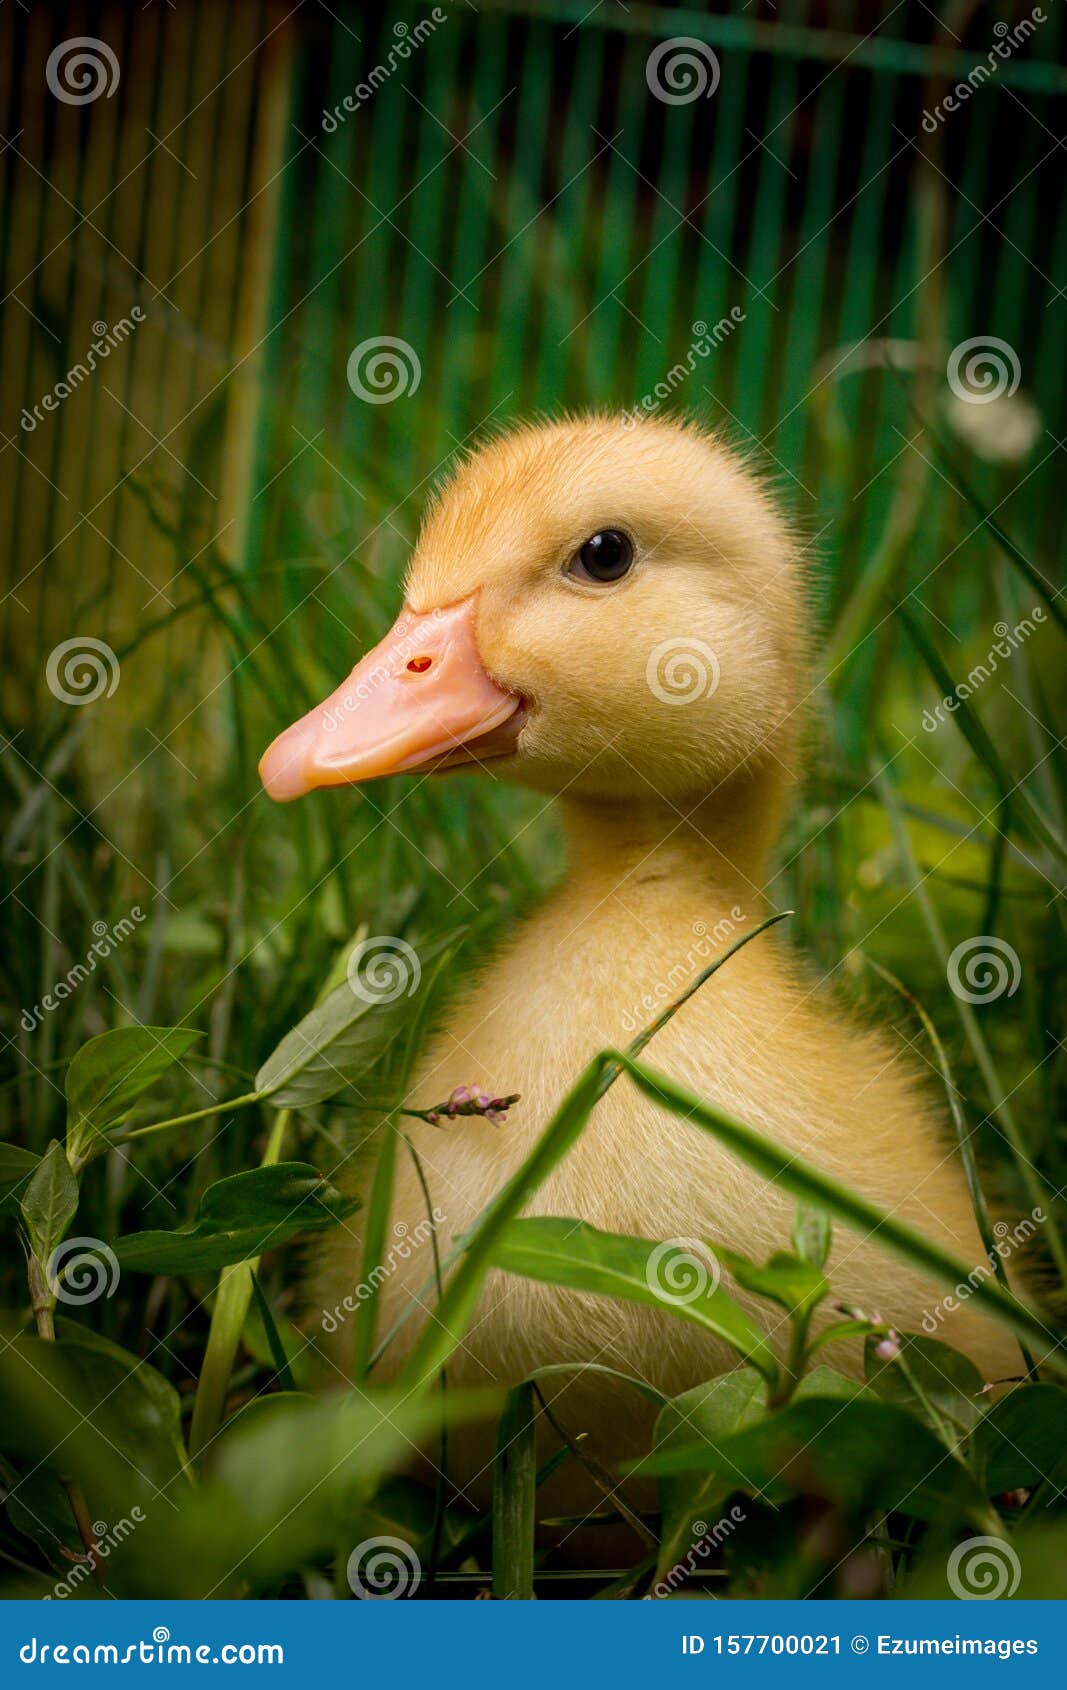 American Pekin Duckling Stock Image Image Of Baby Backyard 157700021